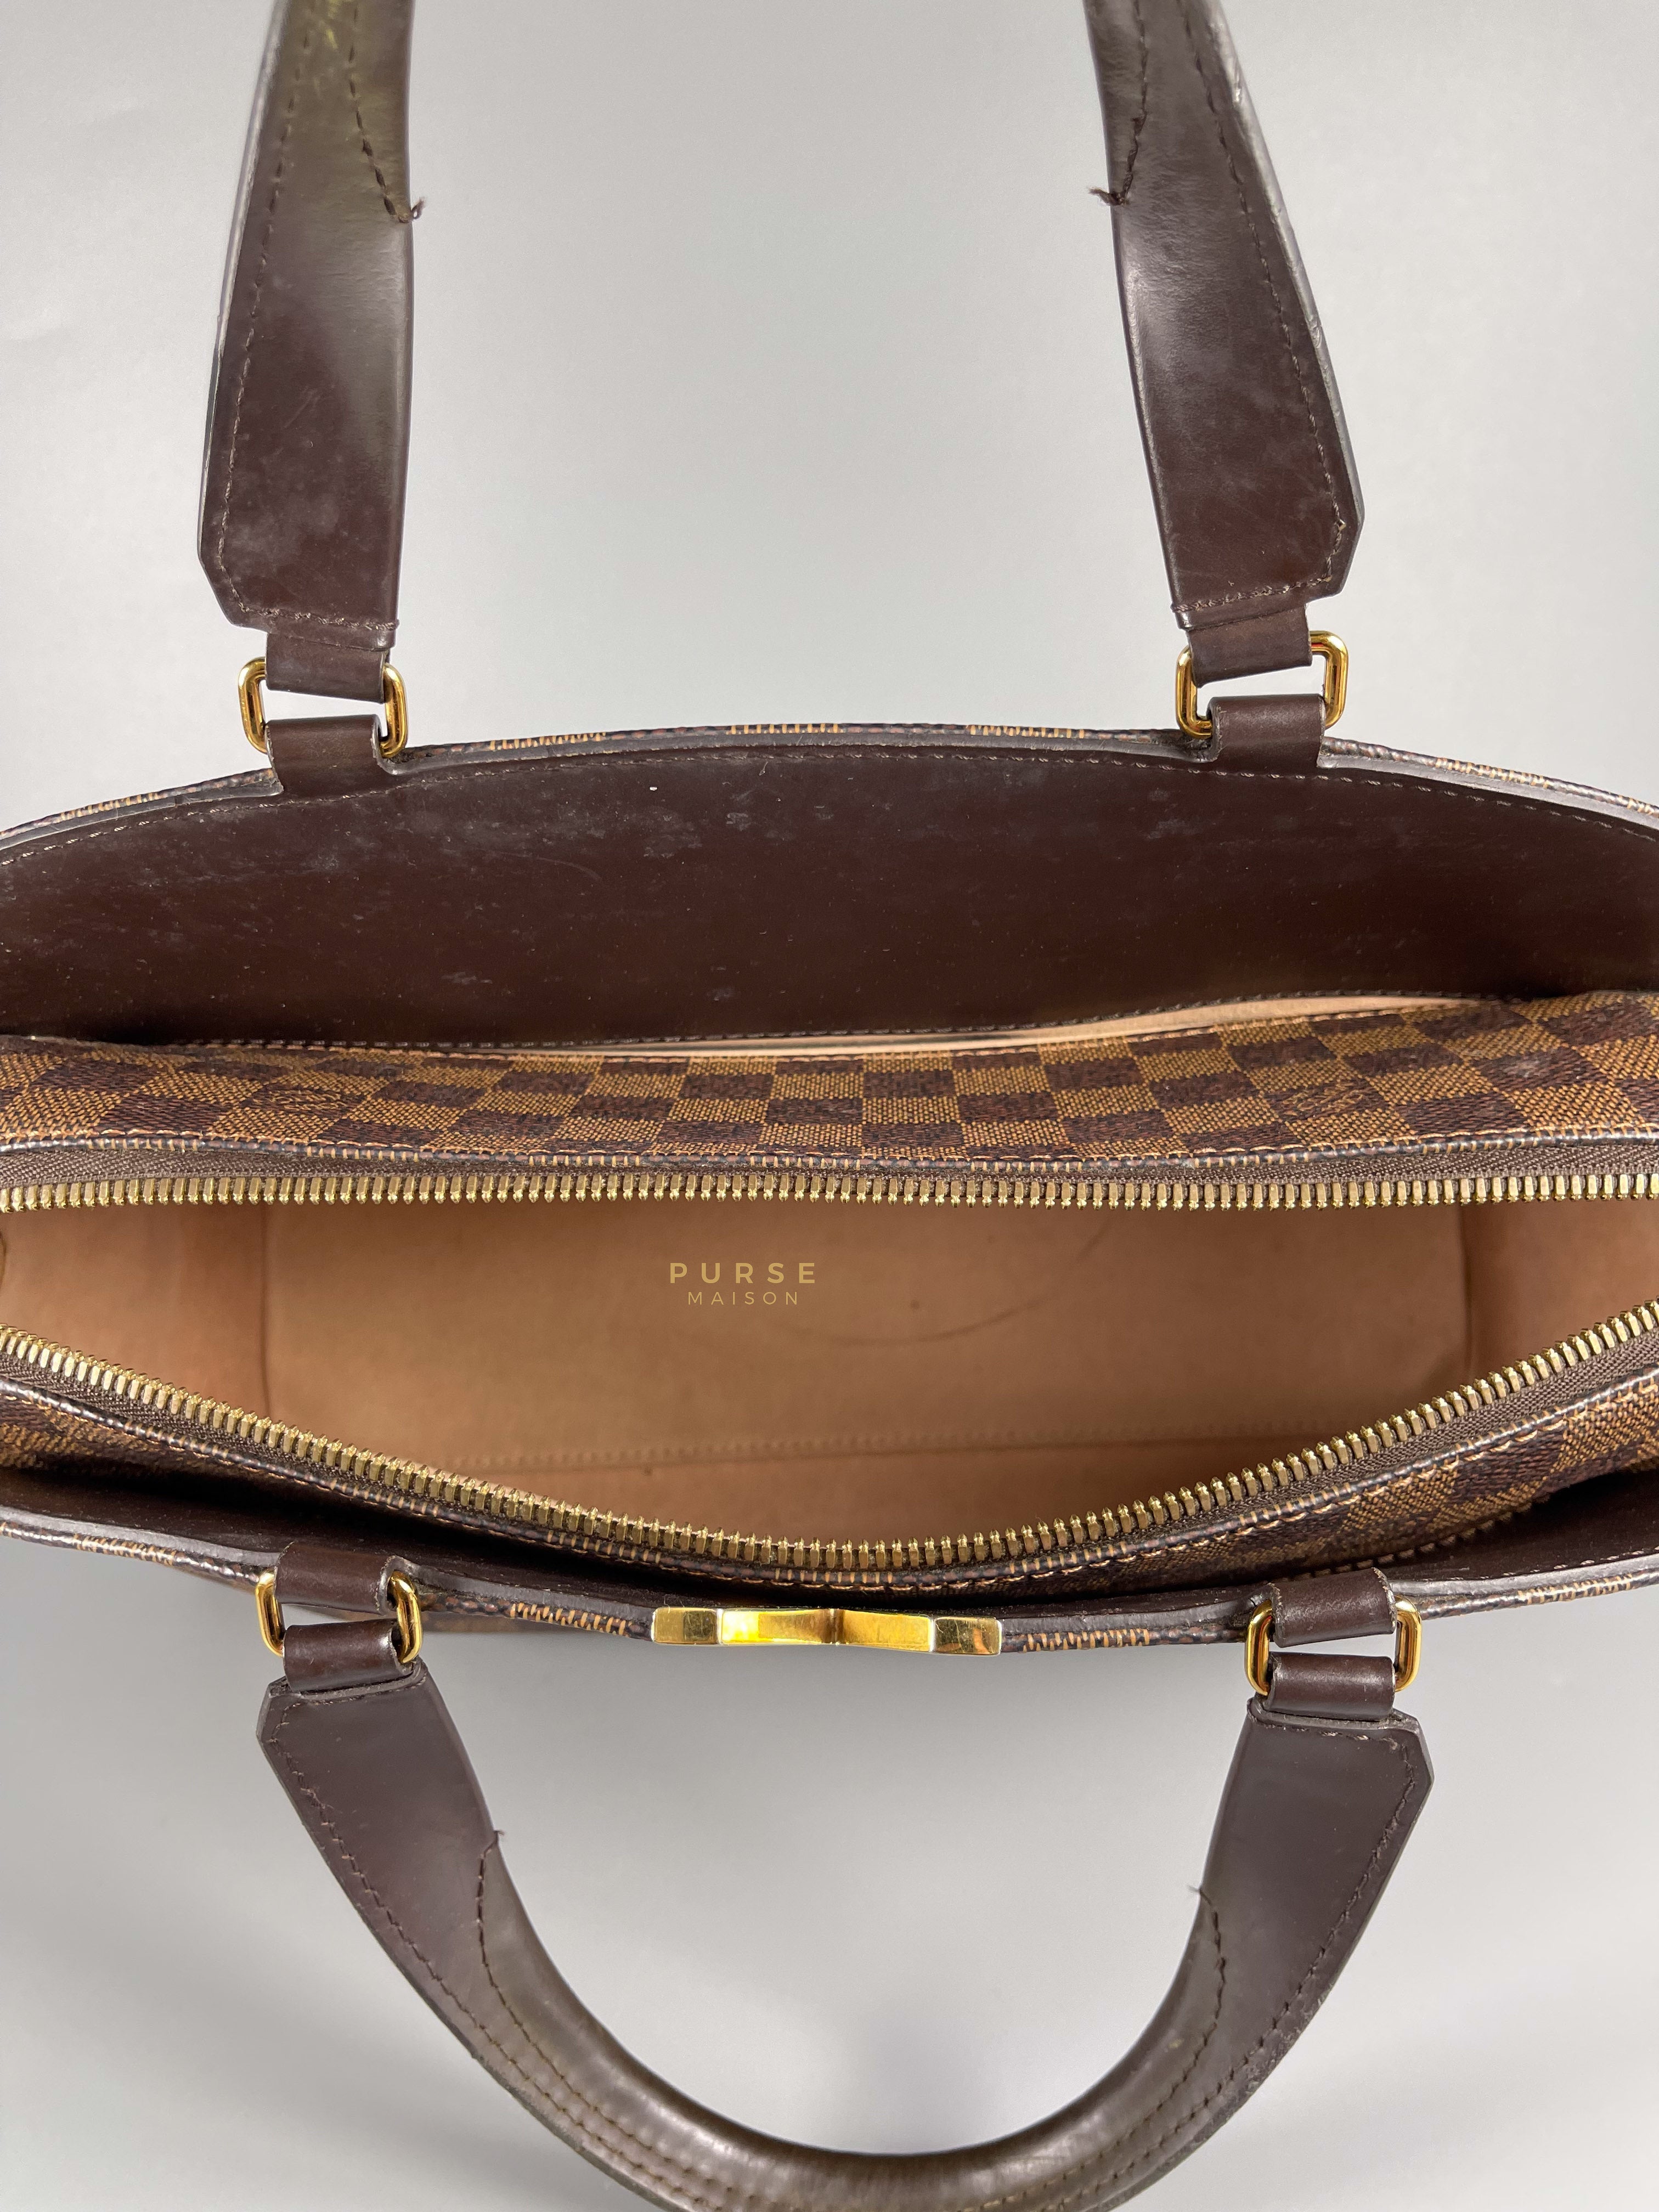 Louis Vuitton Kensington Bowling 2Way Damier Ebene Canvas Shoulder Bag (Date Code: TJ1176) | Purse Maison Luxury Bags Shop